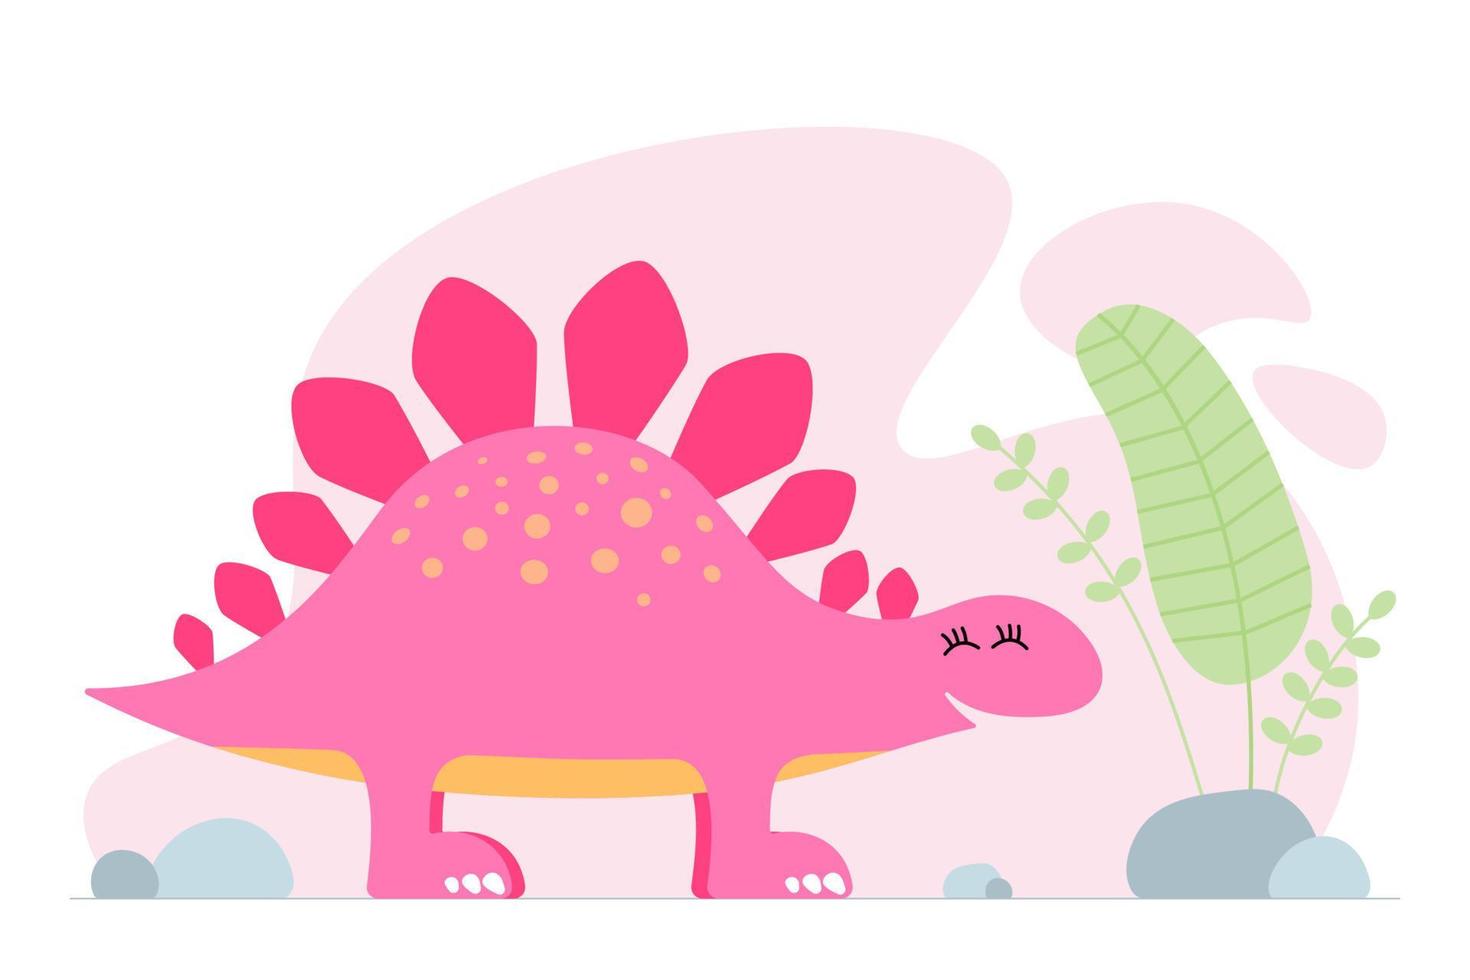 simpatico dinosauro rosa. stegosauro di dinosauro bambino sorridente gentile. banner di stampa di progettazione grafica del bambino del fumetto. design originale da ragazza creativo. illustrazione vettoriale eps di disegno a mano